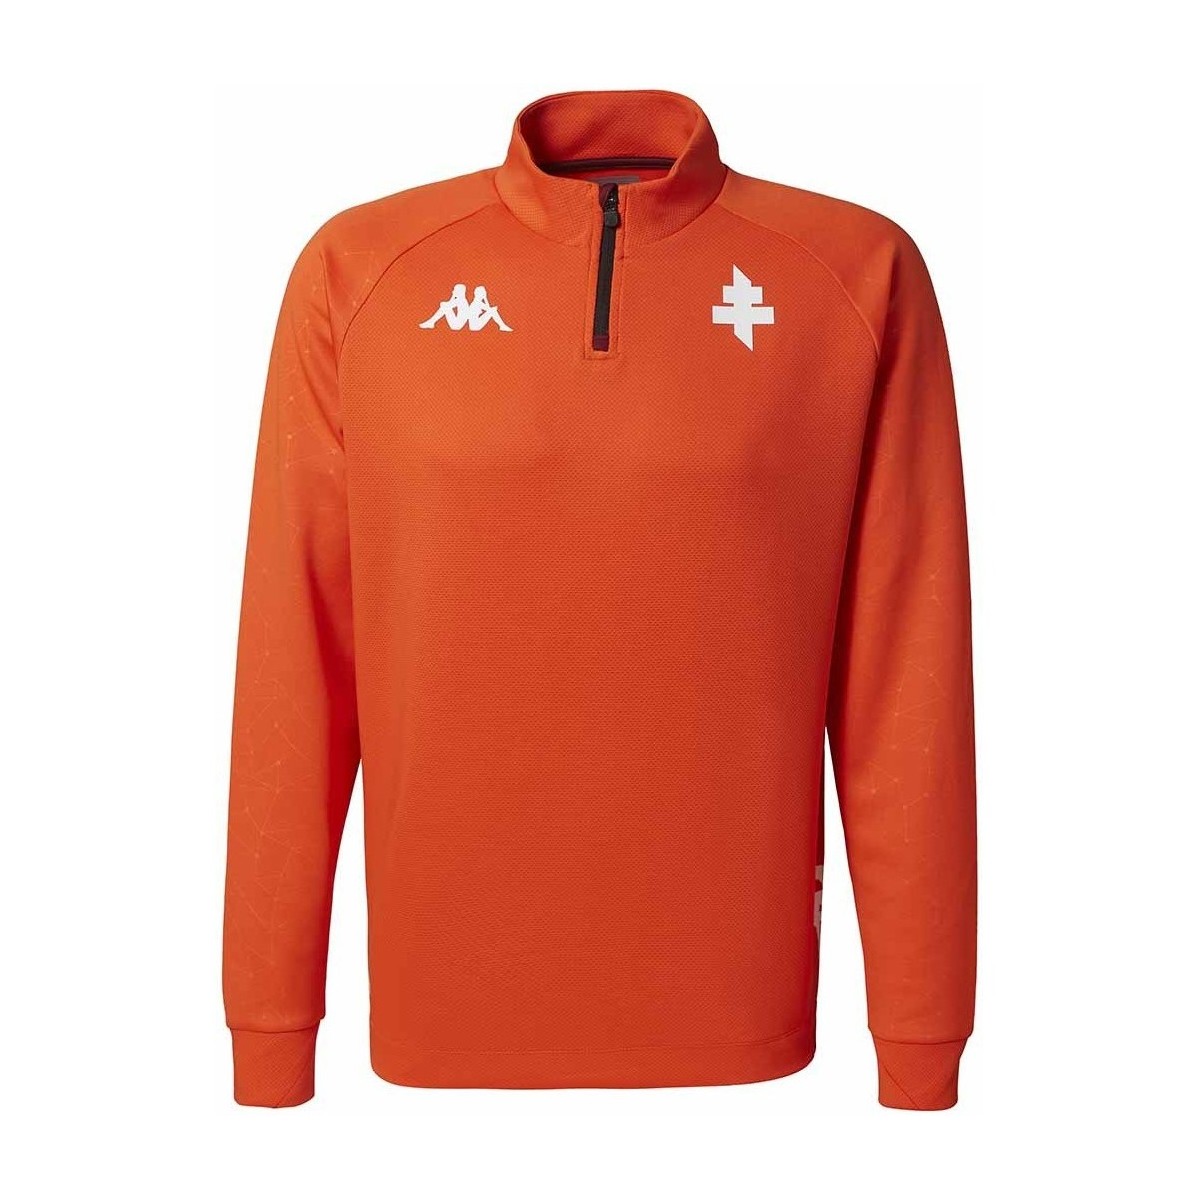 Kappa Orange Sweatshirt Ablas Pro 6 FC Metz 22/23 seTOVxLO